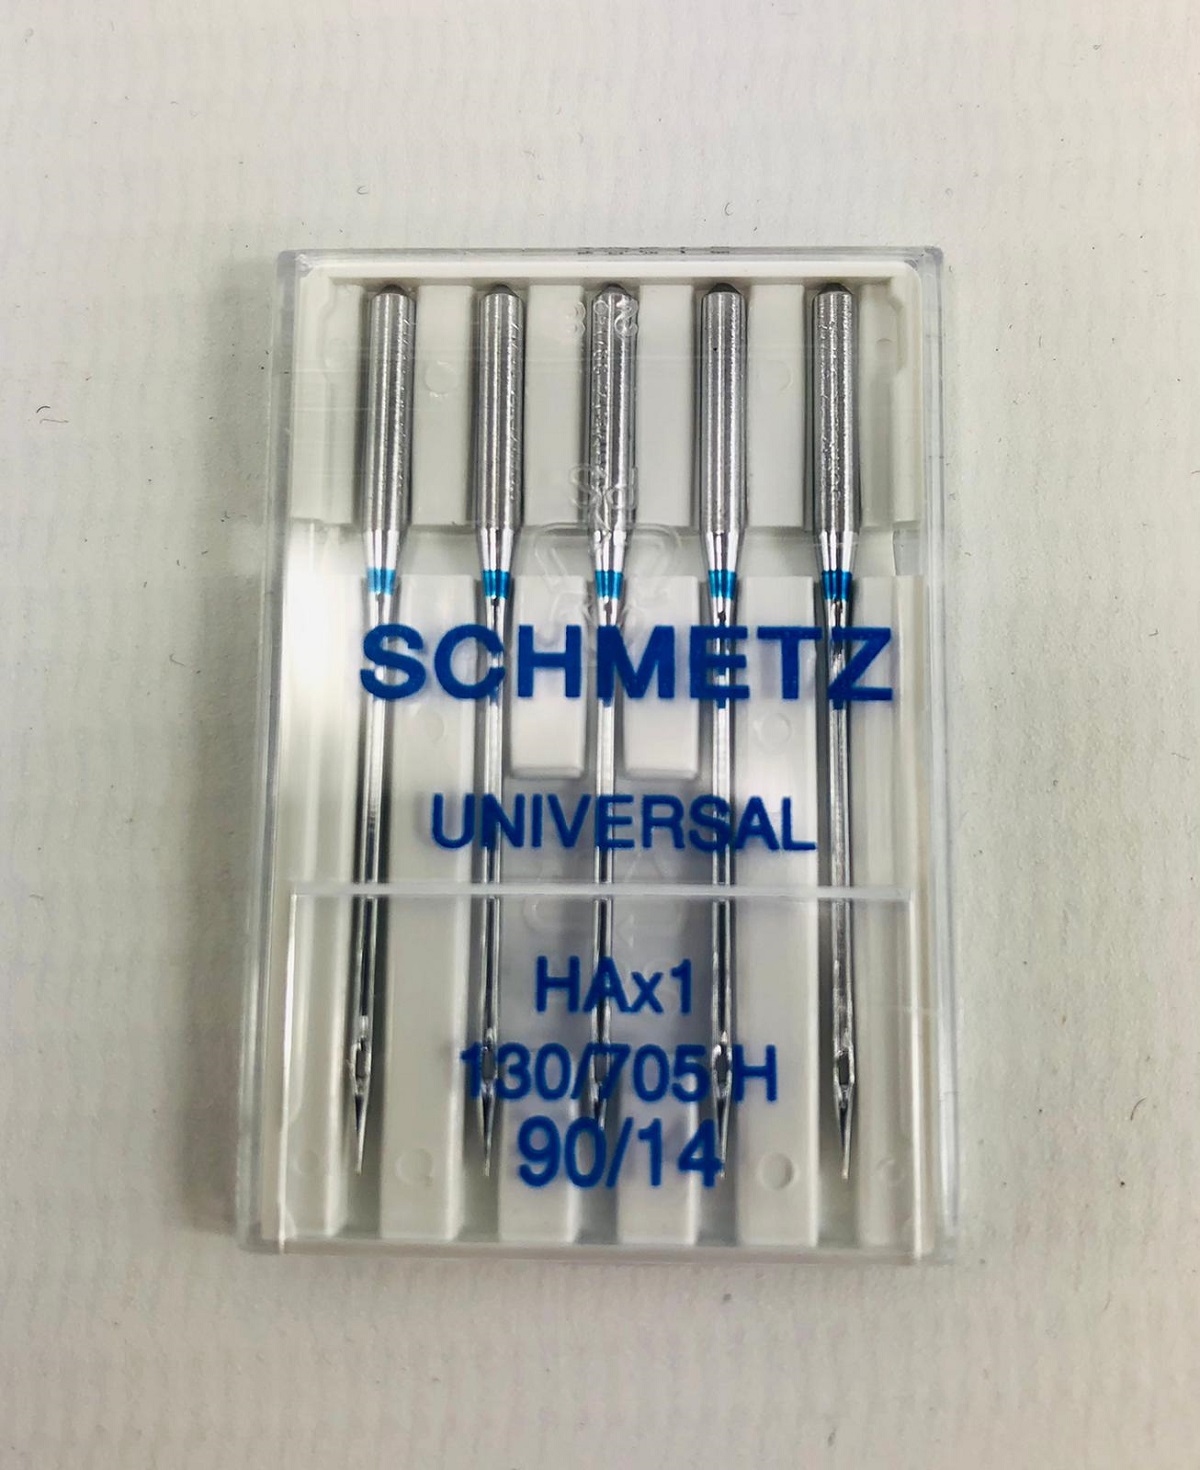 Schmetz Universal HAx 130/705 H 90/14 5er Pack (Restposten)